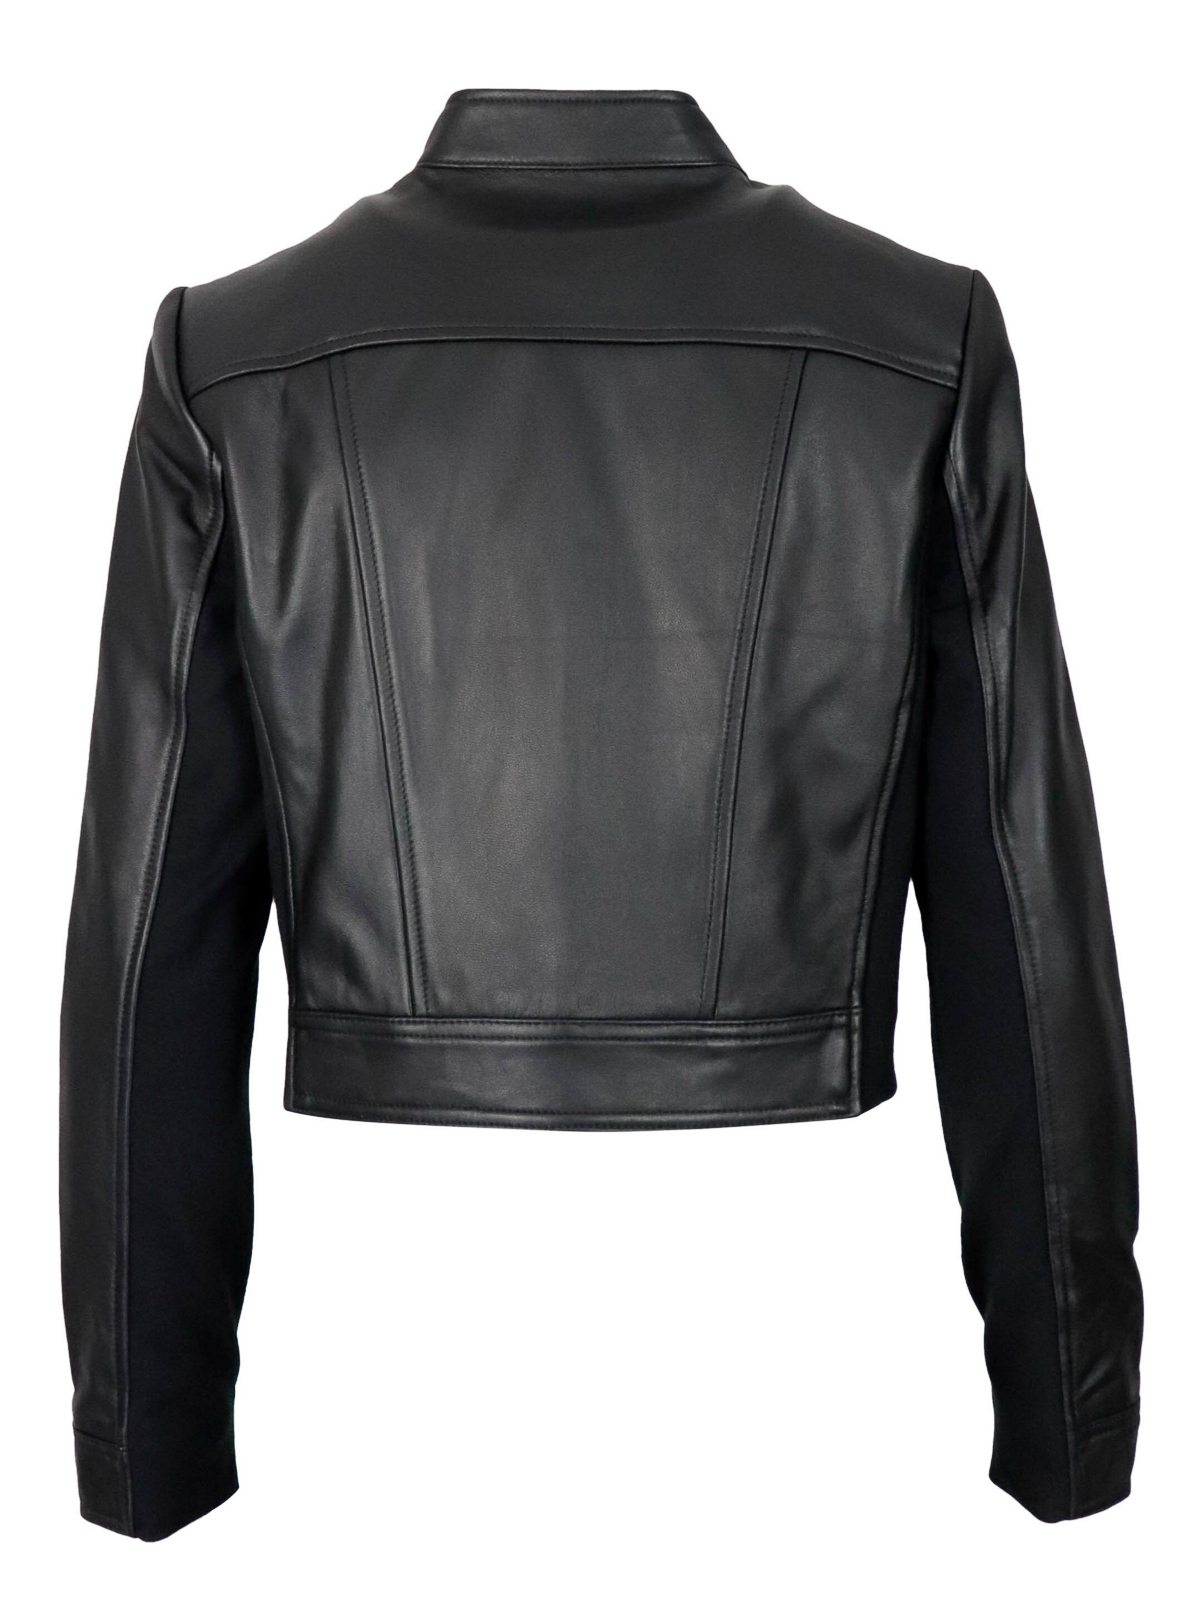 michael kors leather jacket sale